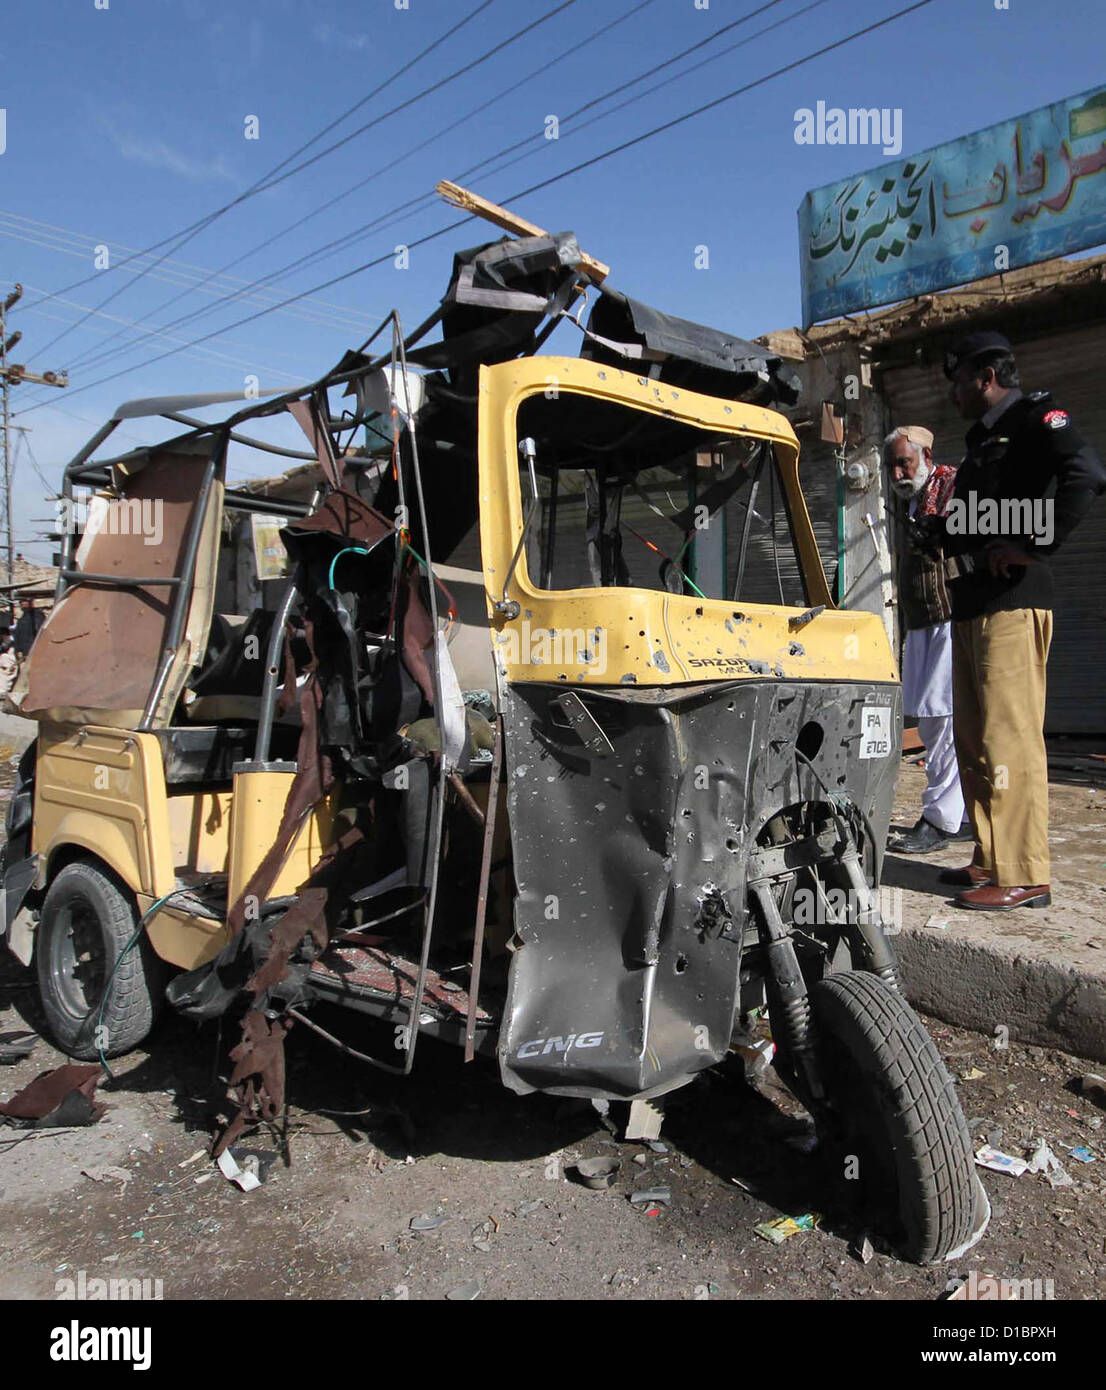 Vista de auto-rickshaws destruidos tras la explosión de una bomba en la carretera Saryab en Quetta el viernes, 14 de diciembre de 2012. Ocho personas heridas incluyendo un oficial de las fuerzas de seguridad, 7Kilgrams bomba fue plantado en un ciclo y destino de tropas militares. Foto de stock